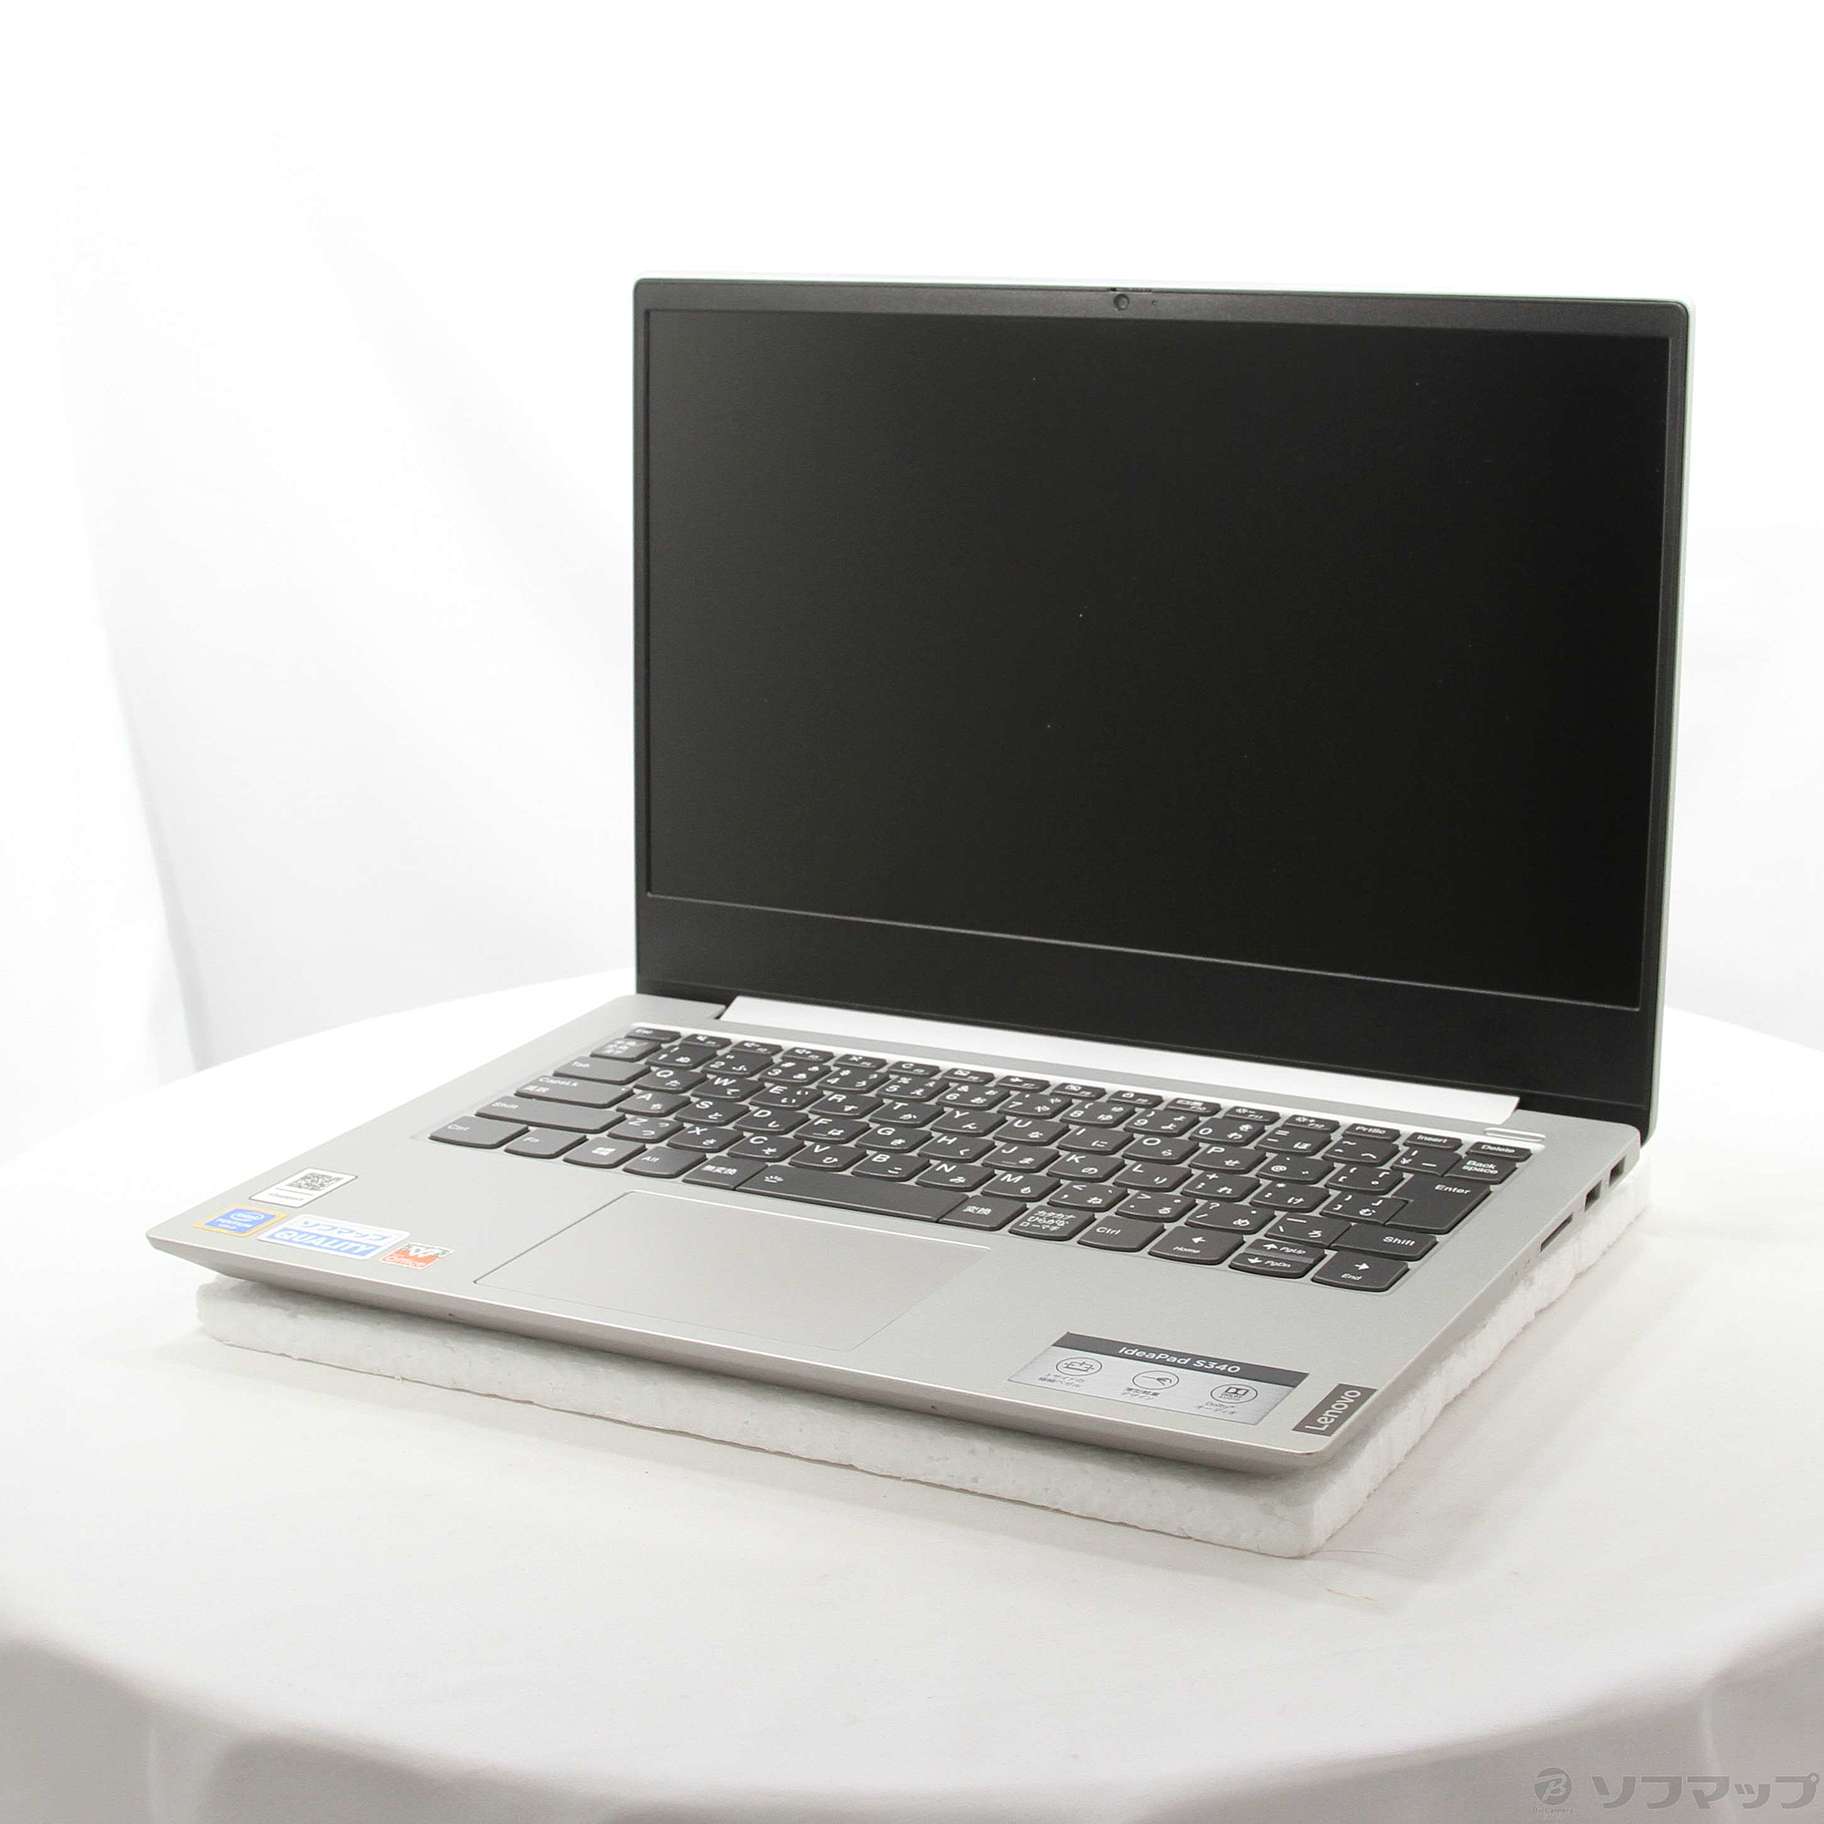 Lenovo ideapad S340 ジャンク 電源入りません - PC/タブレット